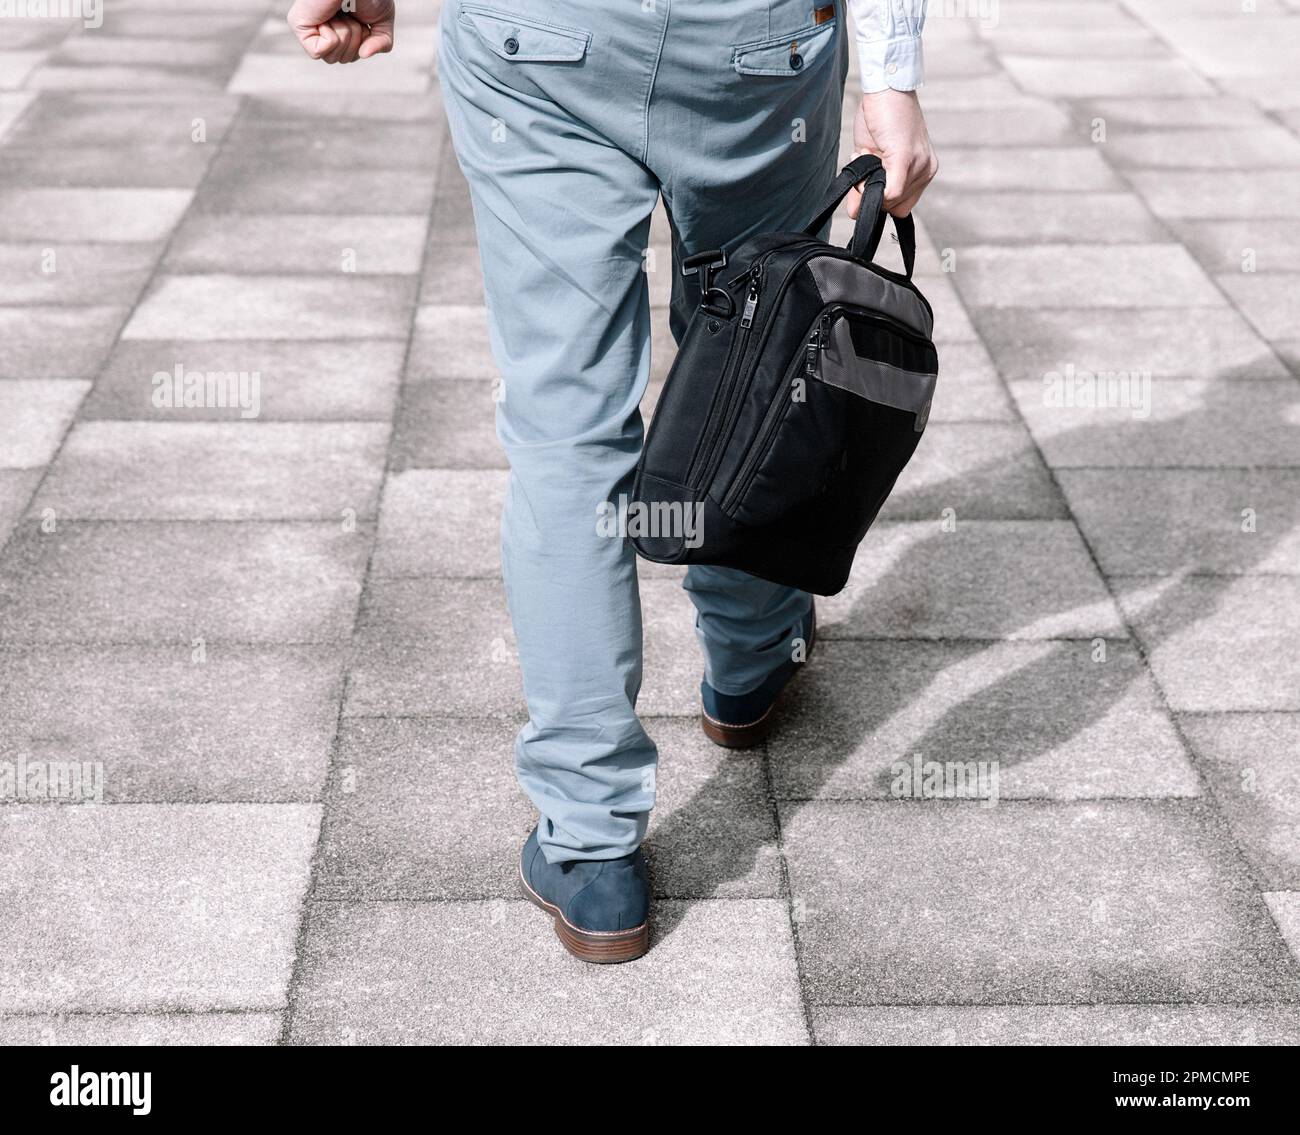 Hombre de negocios en un traje de color claro y maletín oscuro que va a trabajar, vista trasera Foto de stock